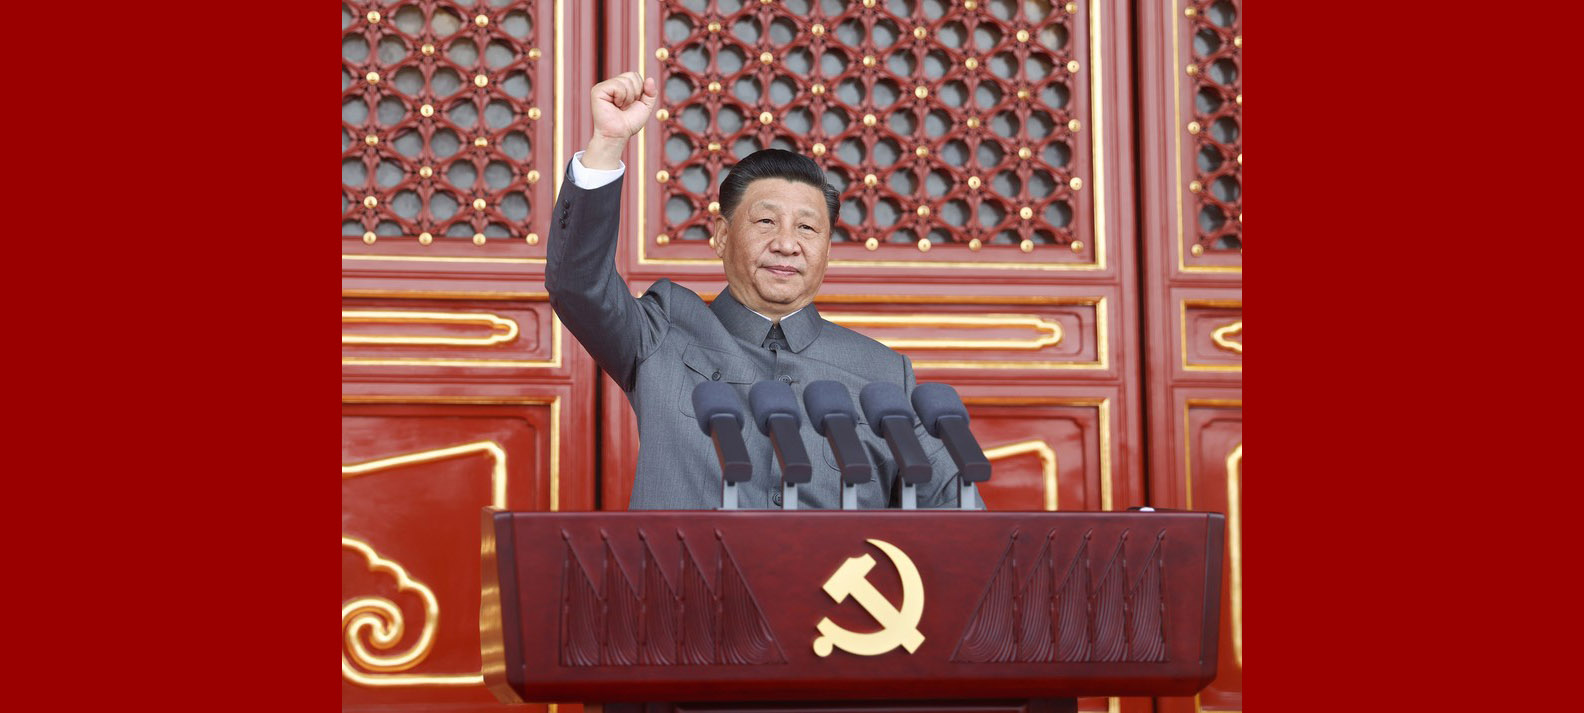 Perfil: Xi Jinping, o homem que lidera o PCC em nova jornada